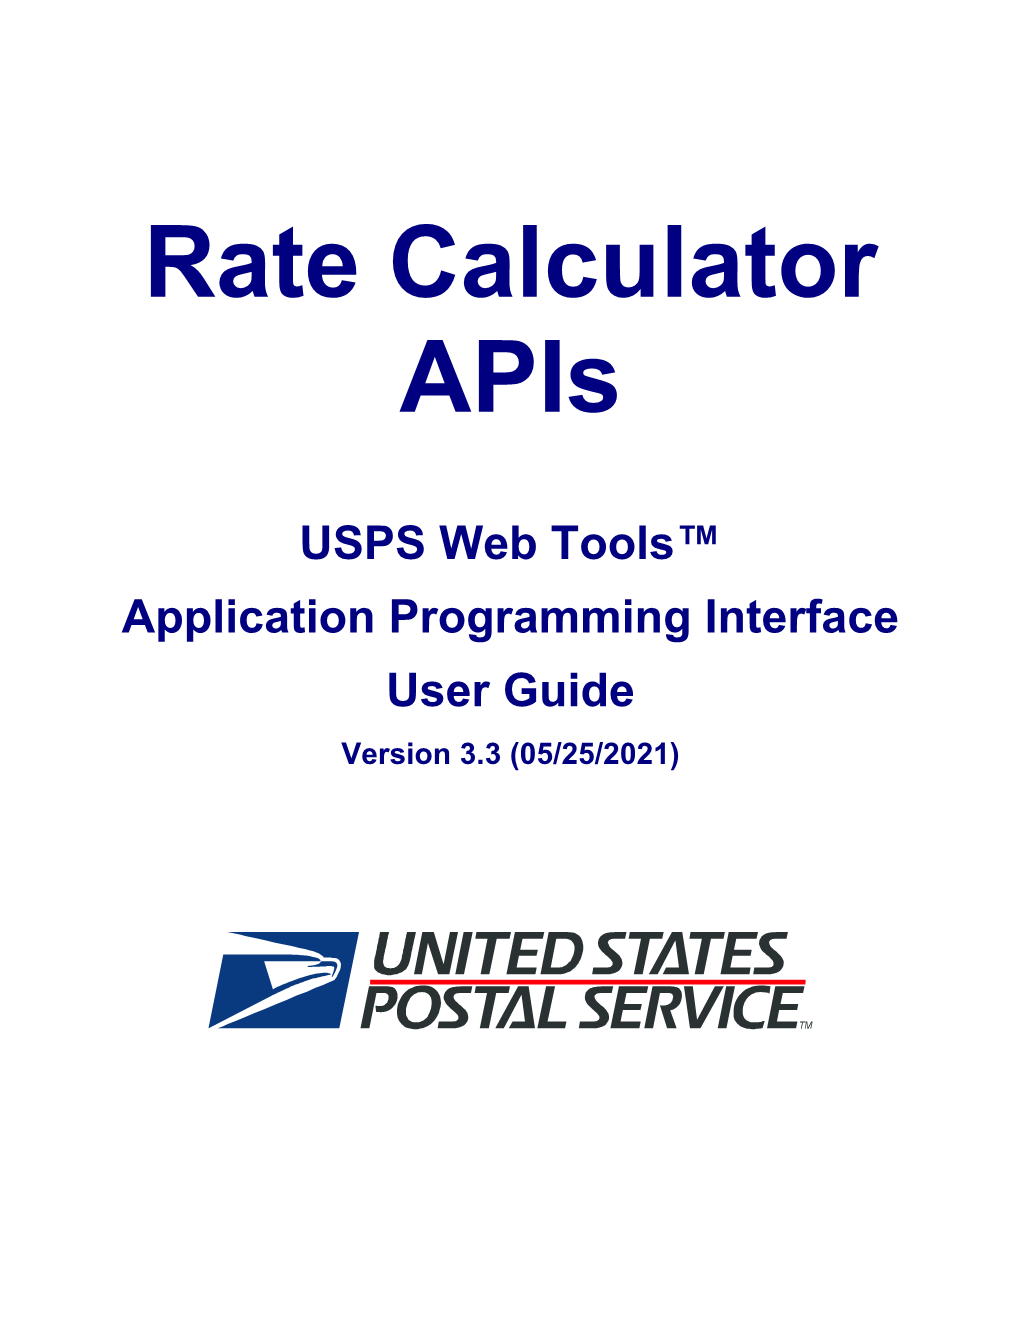 Rate Calculator Apis, Ratev4 and Intlratev2